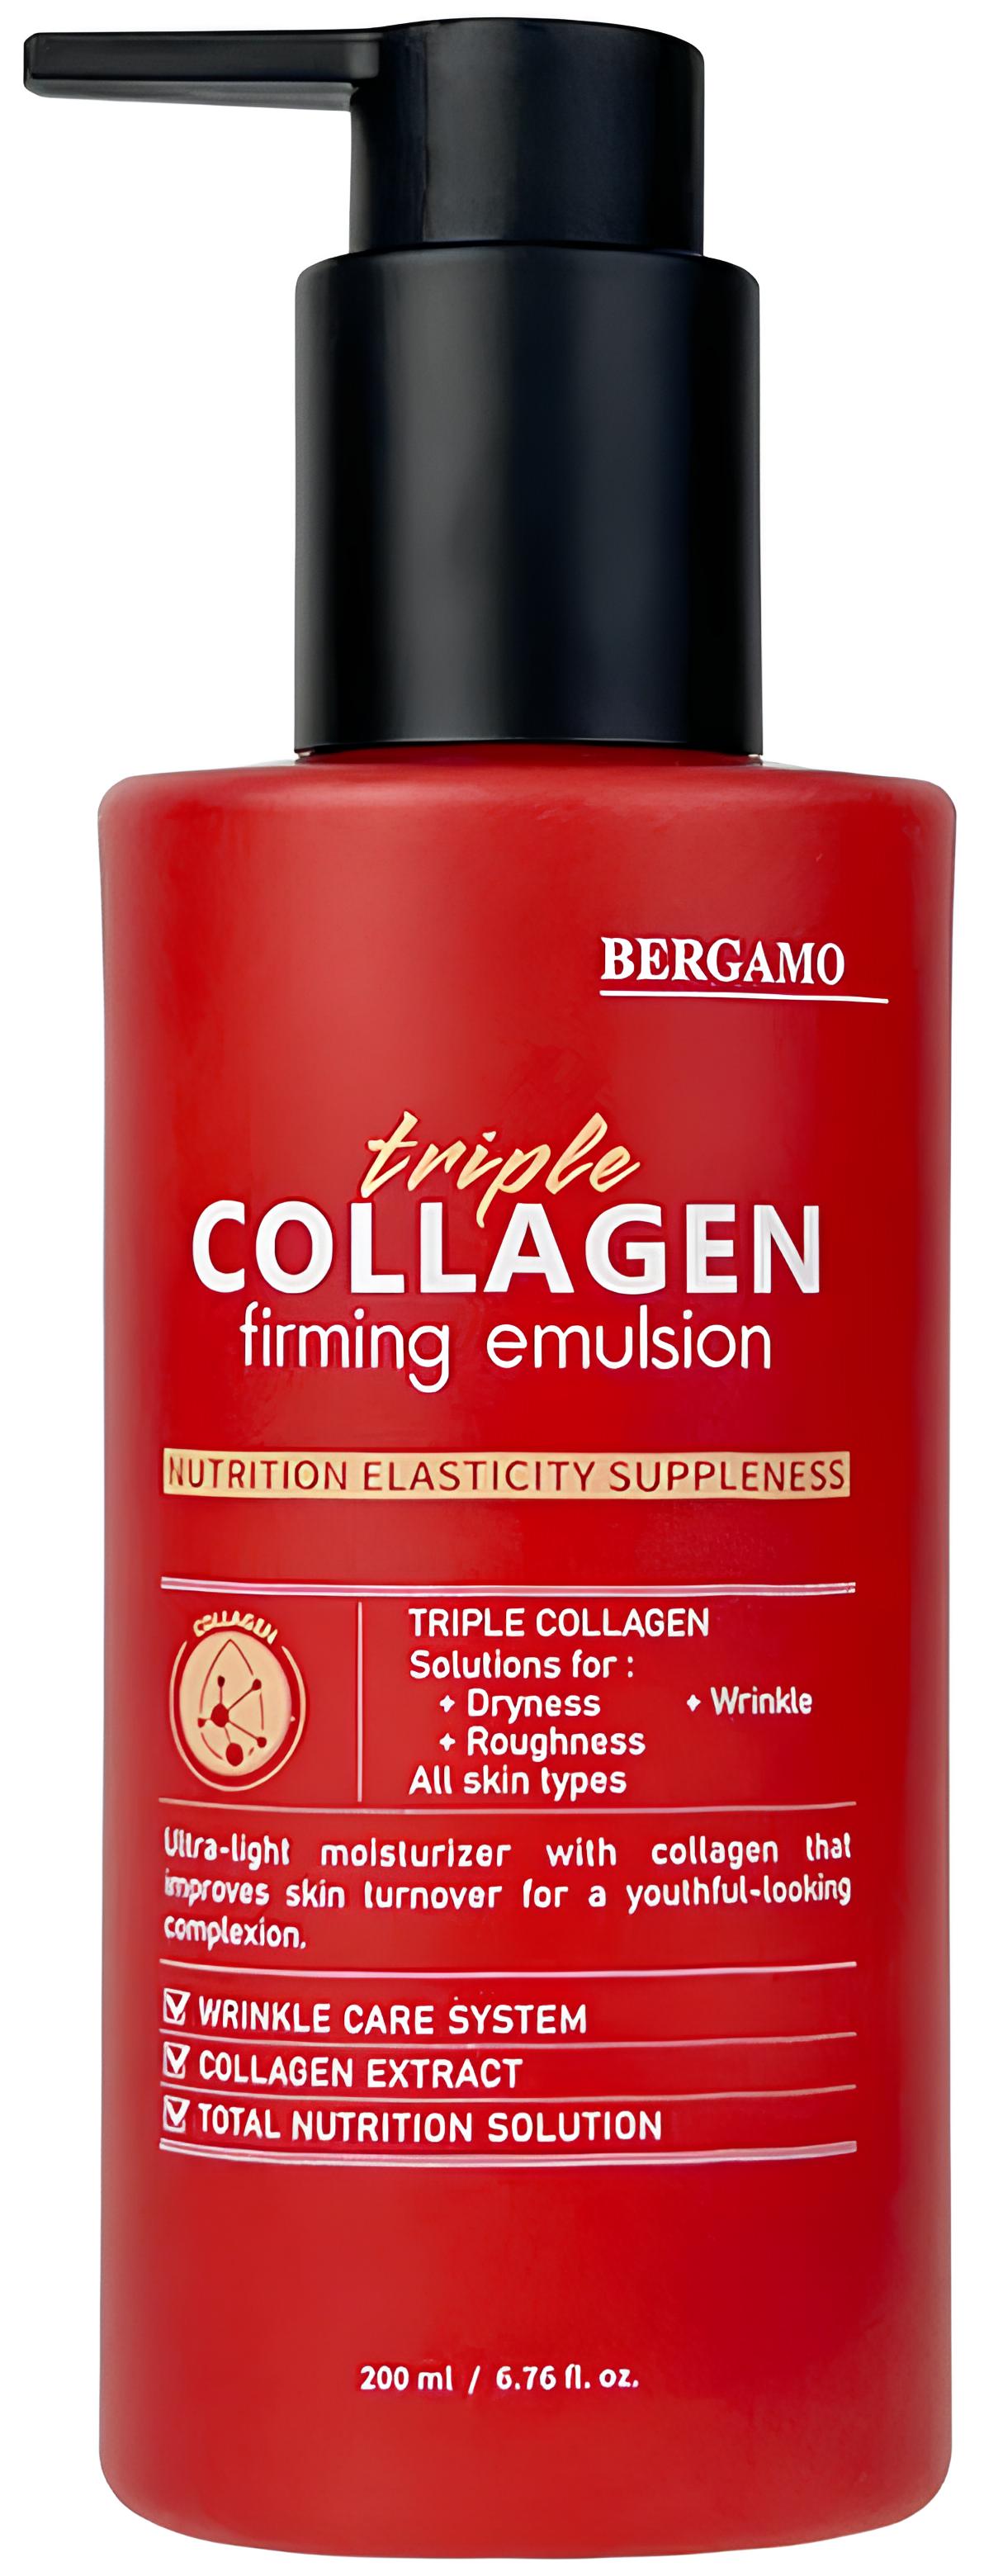 Укрепляющая эмульсия с тройным коллагеном Bergamo Triple Collagen Firming Emulsion 200 мл эмульсия с коллагеном и эластином перед парафинотерапией